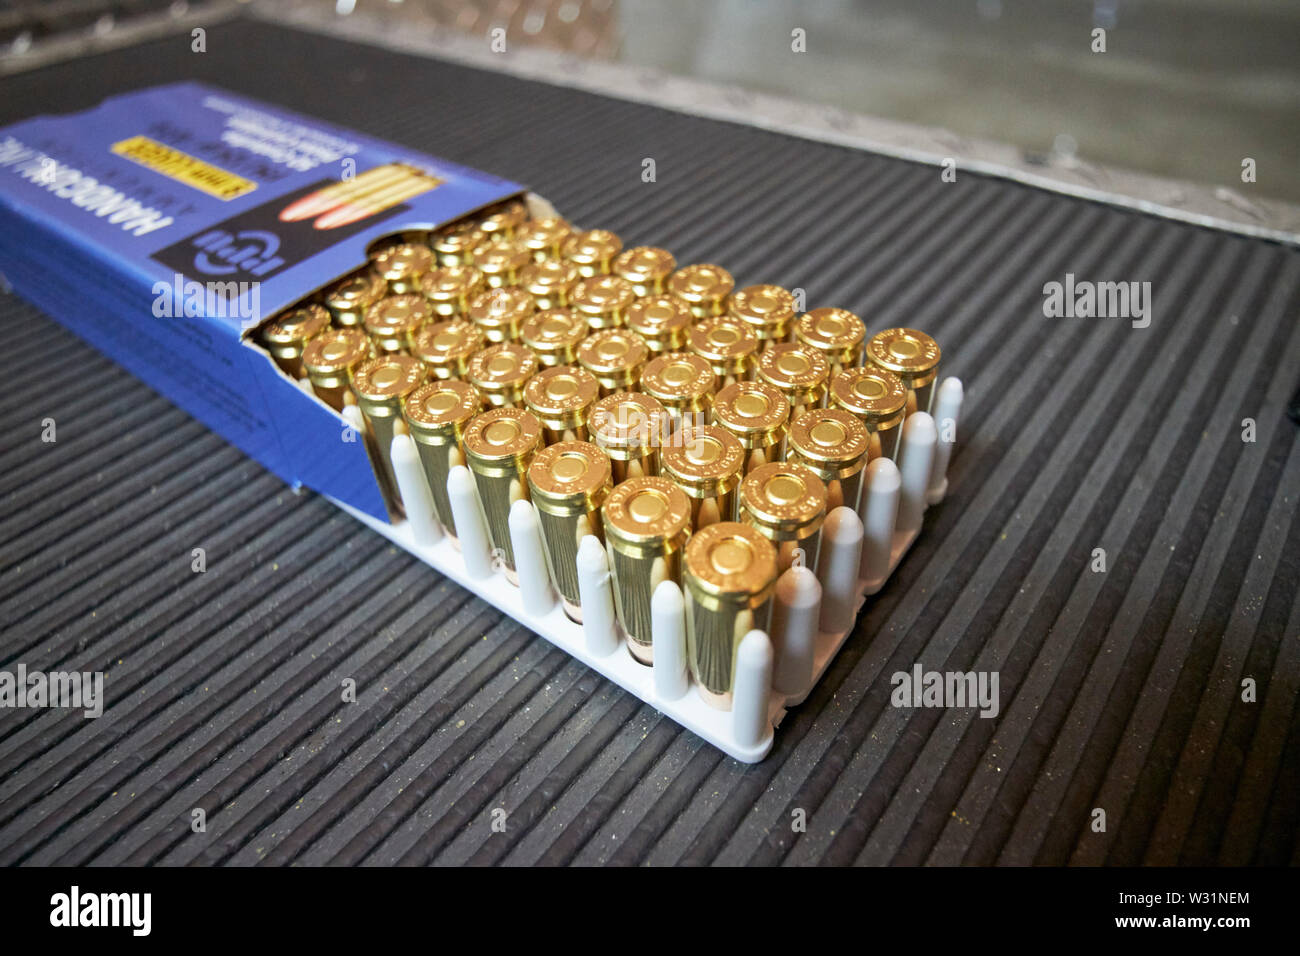 Volle Schachtel mit 9 mm Luger fulll metal jacket Pistole Munition auf ein Gewehr Spektrum USA Vereinigte Staaten von Amerika Stockfoto